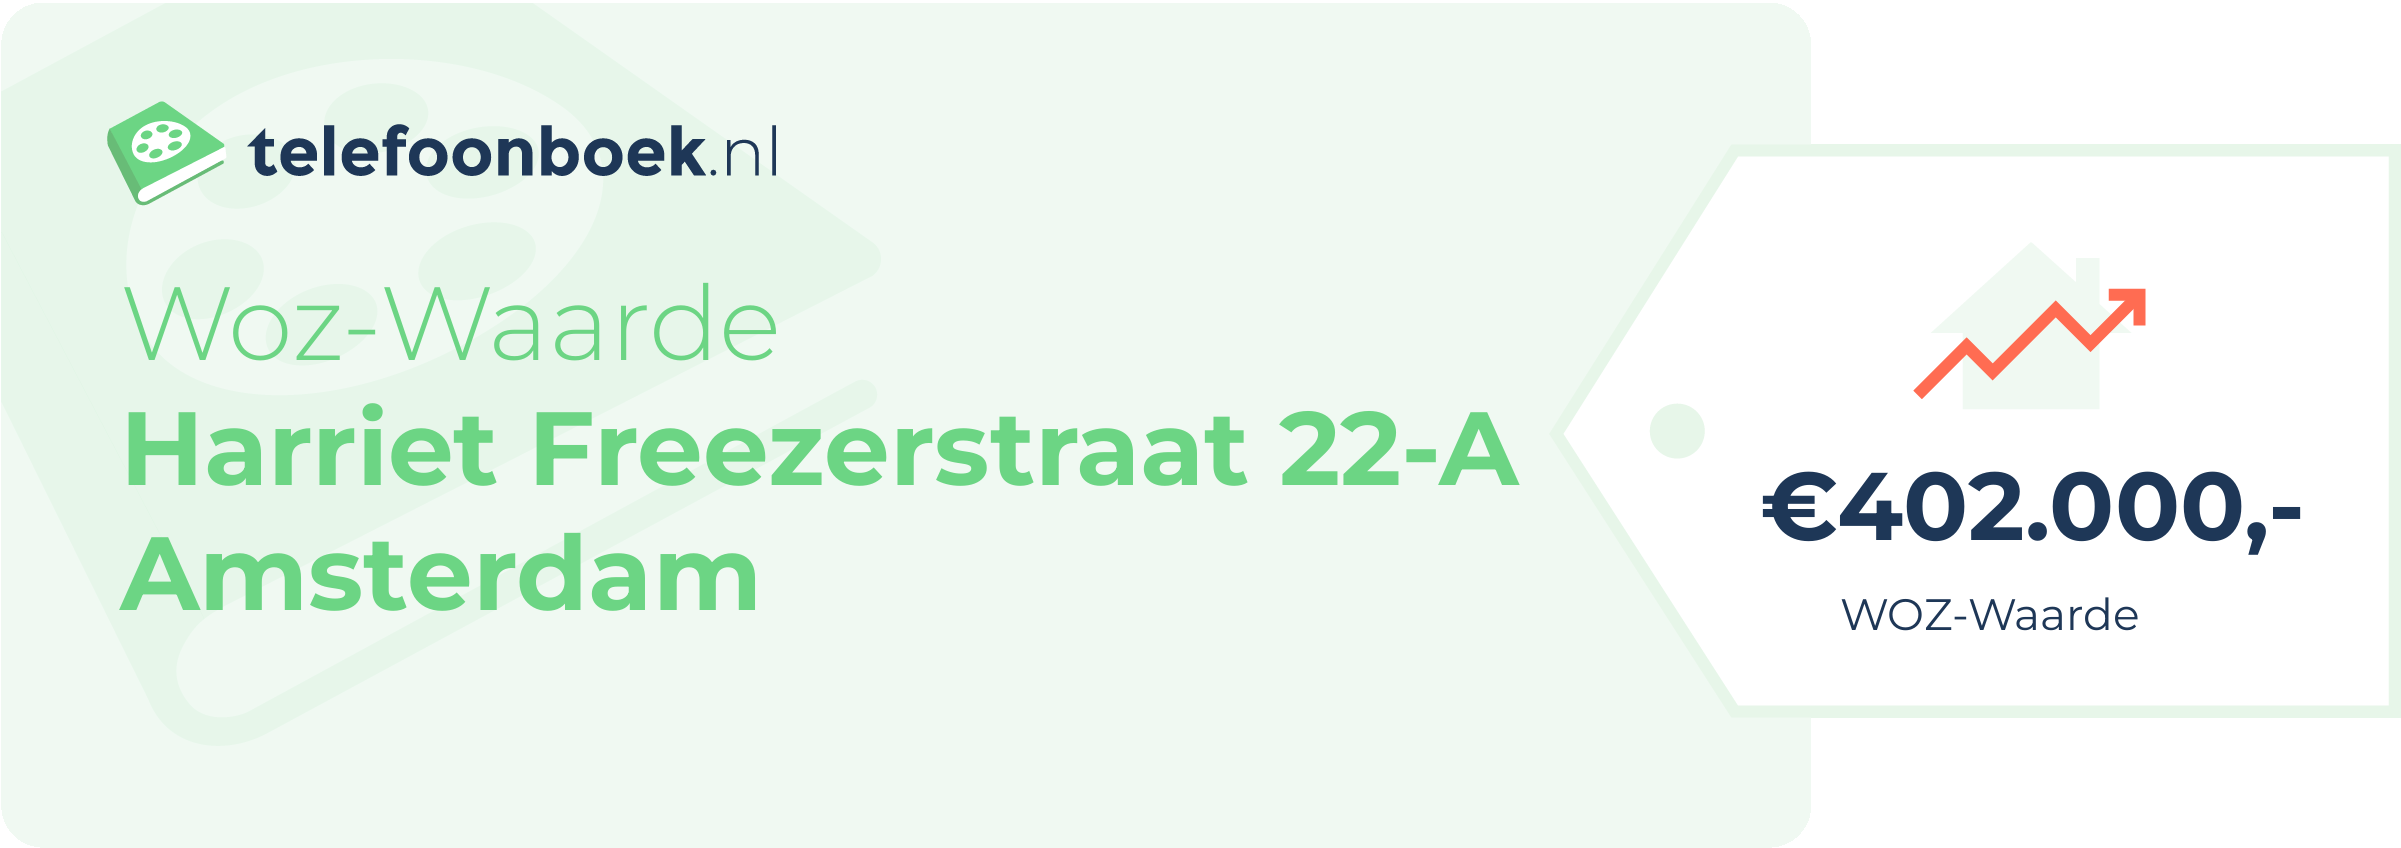 WOZ-waarde Harriet Freezerstraat 22-A Amsterdam